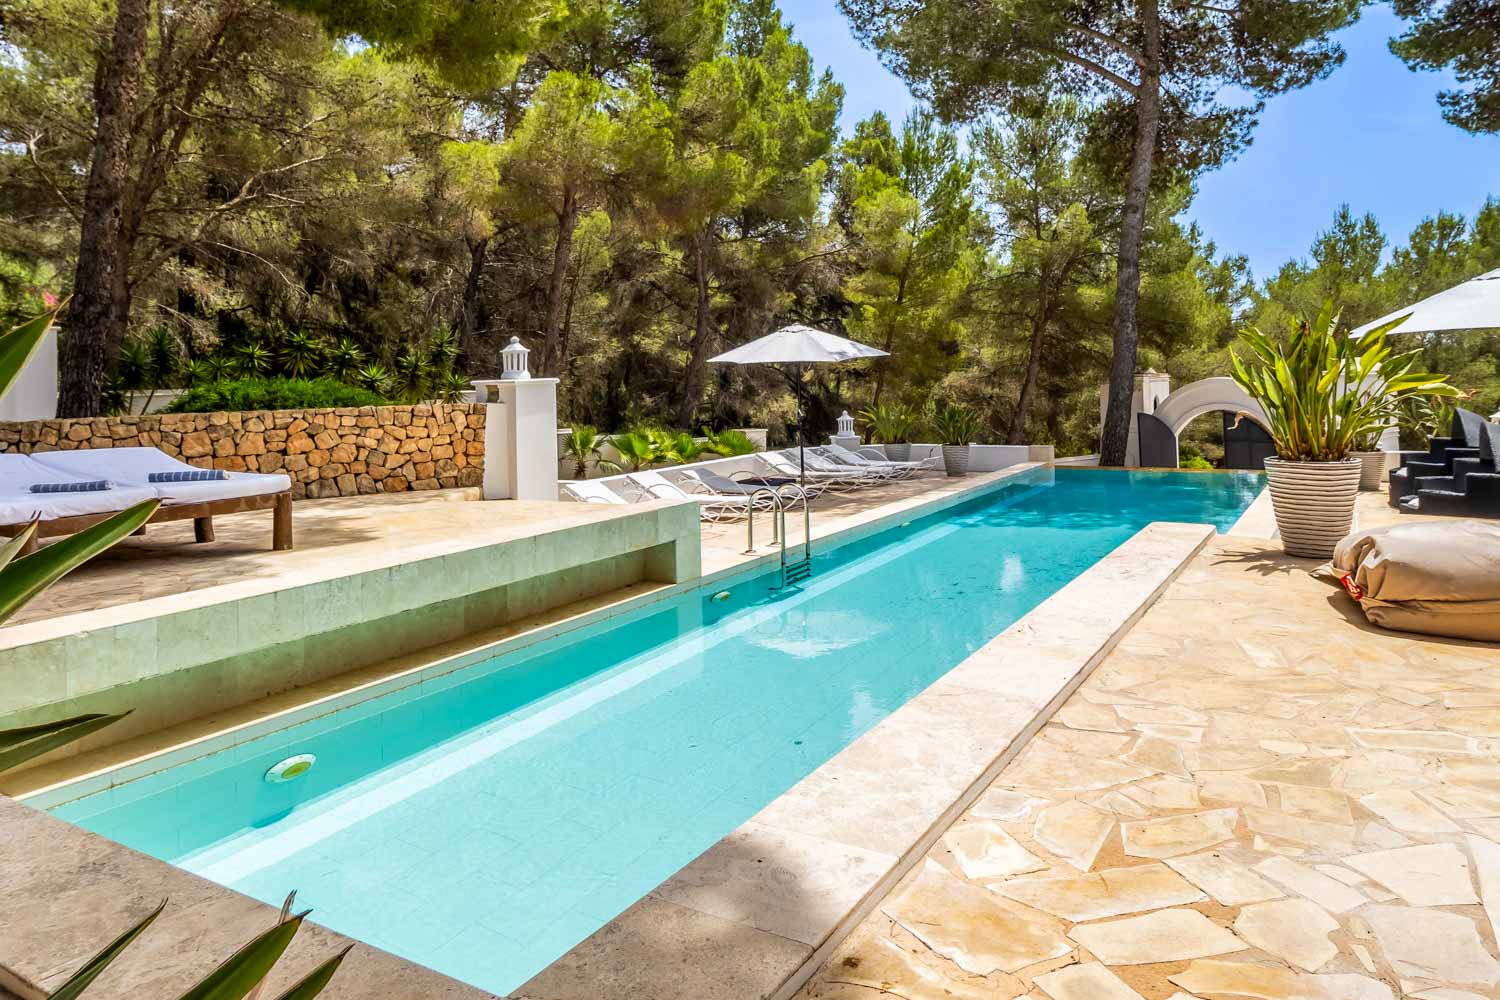 Gran piscina delante de la casa rodeada de vegetación mediterránea.